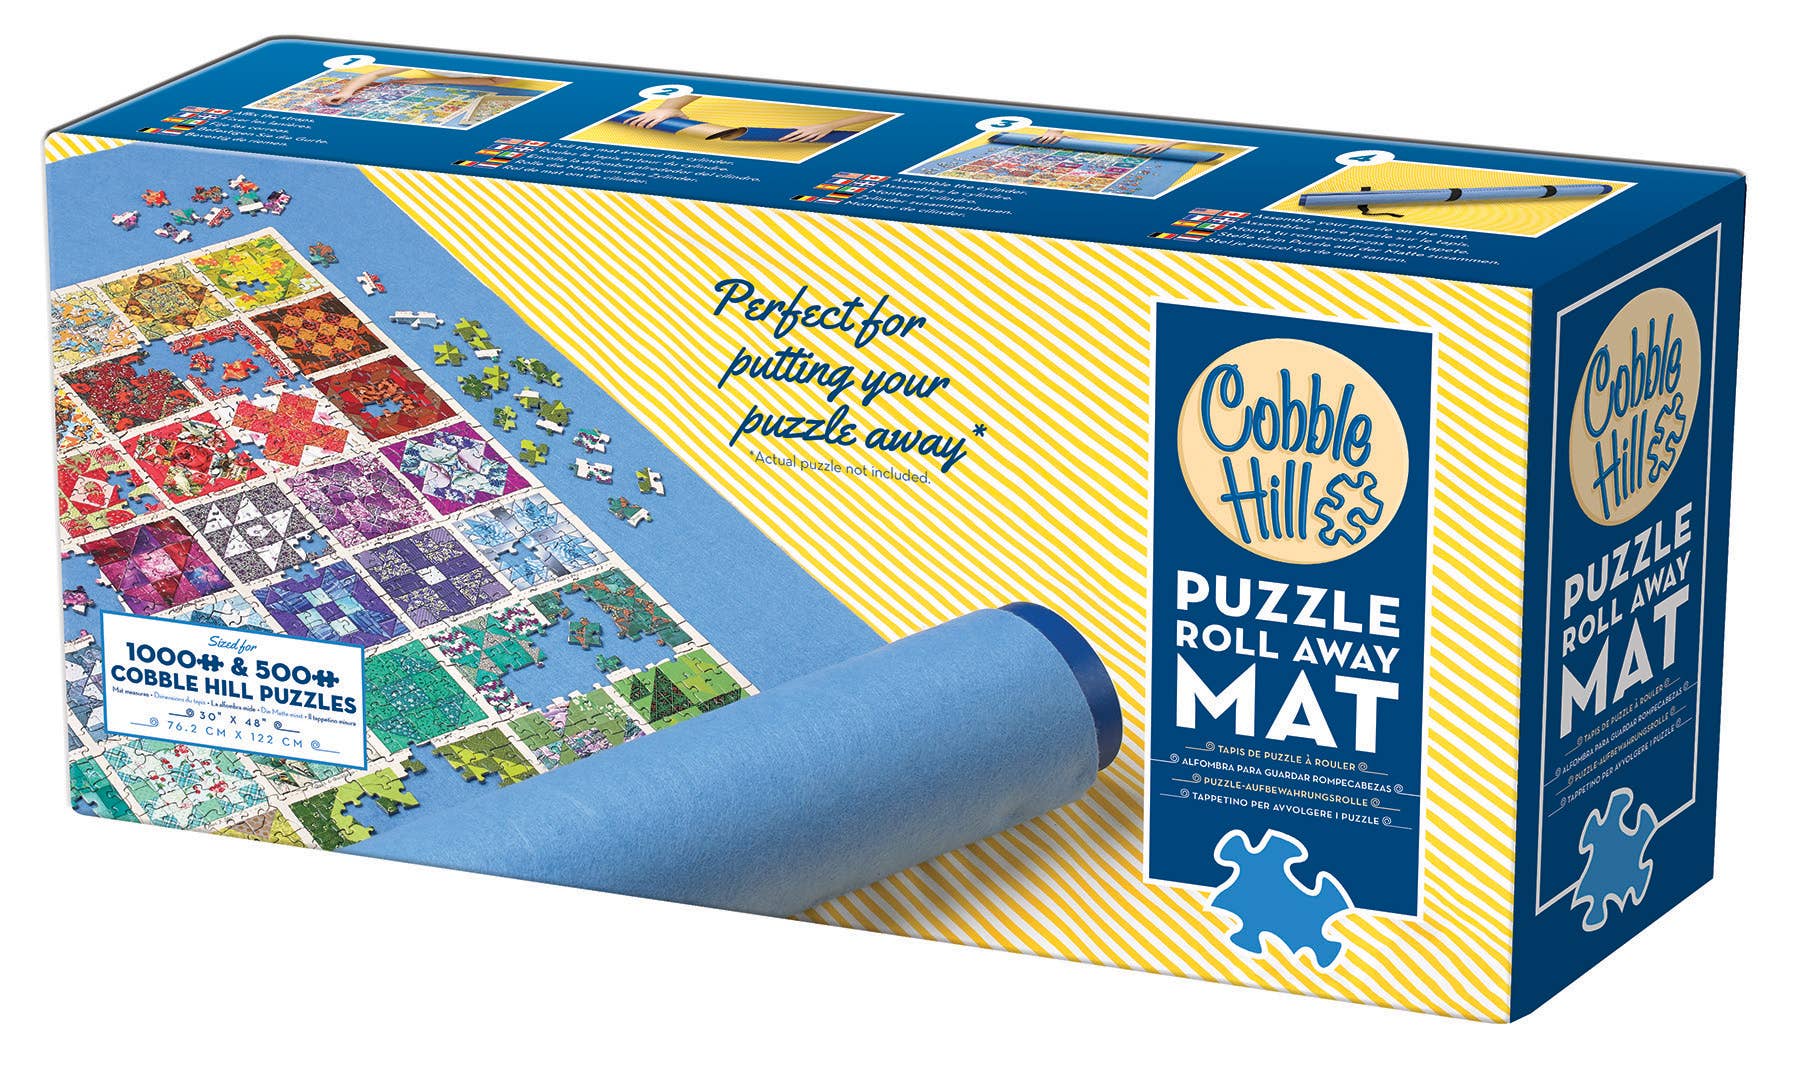 Mat: Puzzle Roll Away Mat